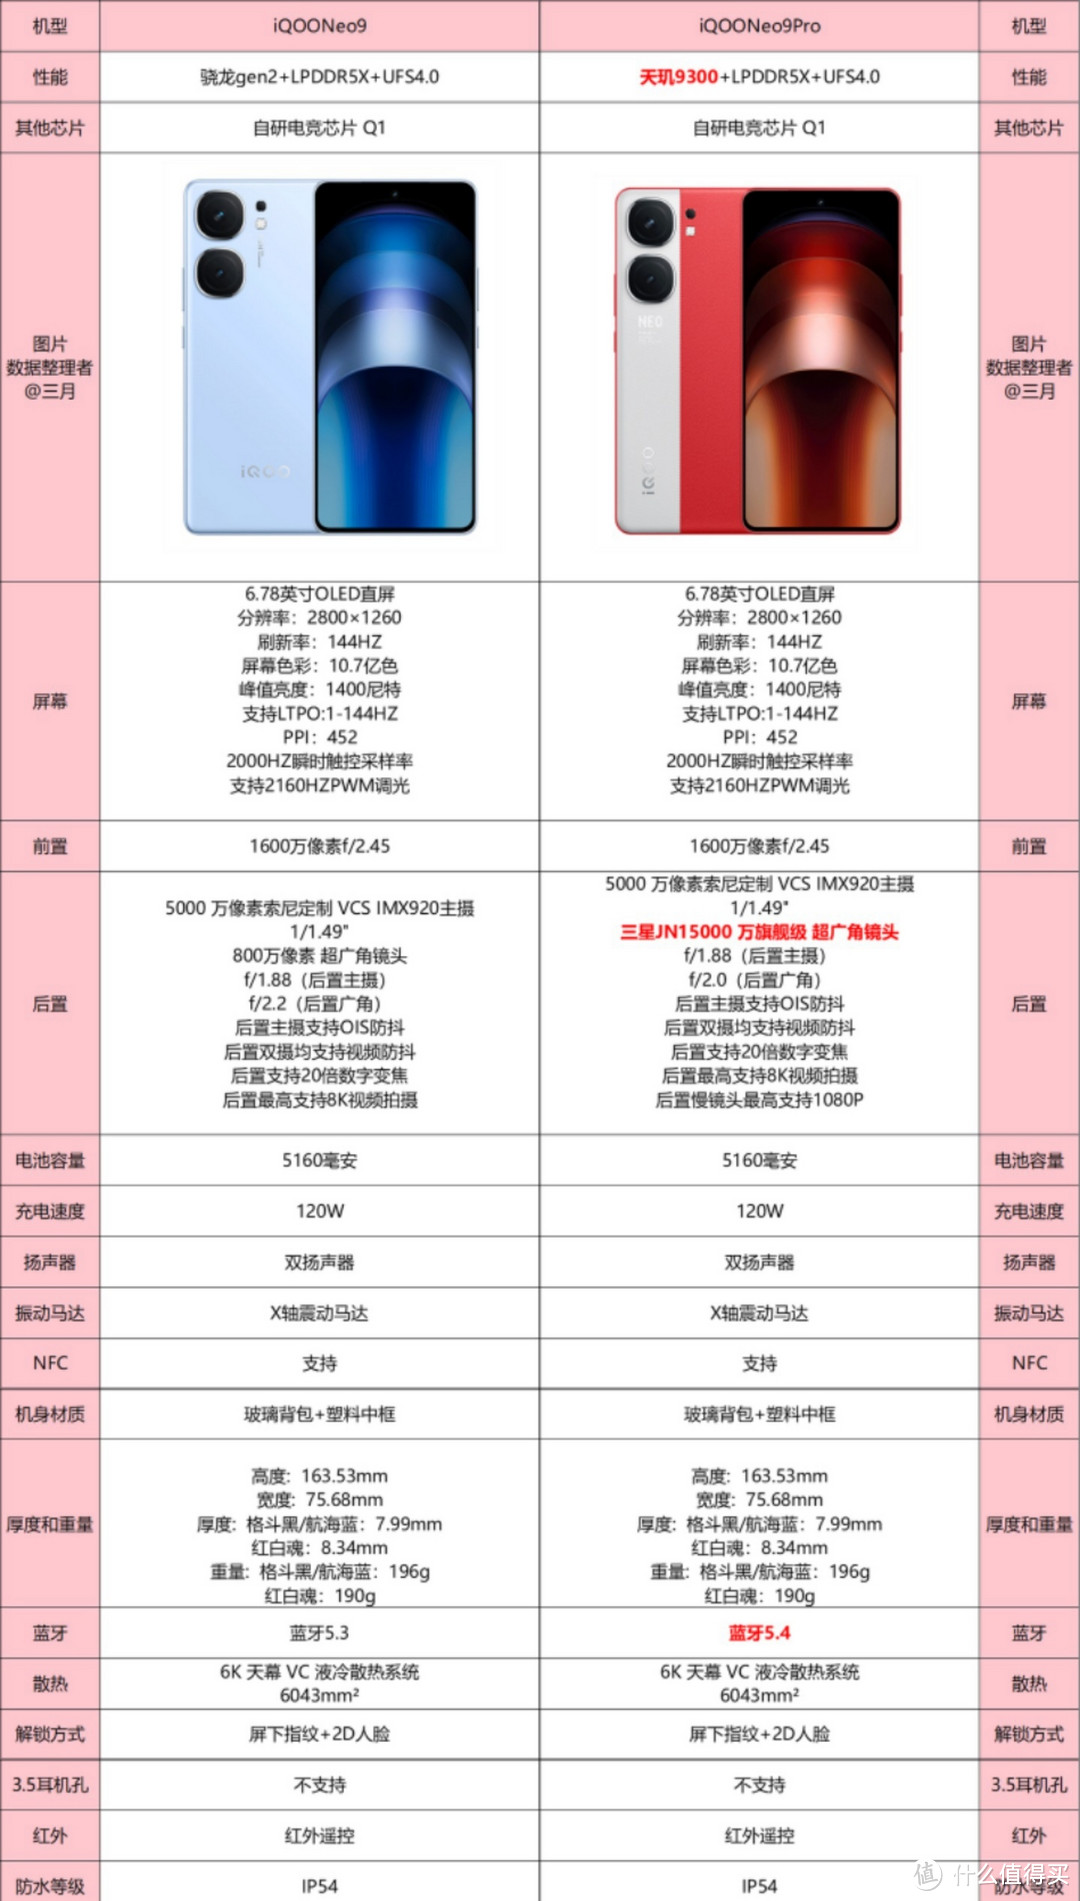 差价700元,iqooneo9和iqooneo9pro有什么区别?哪款更值得购买?